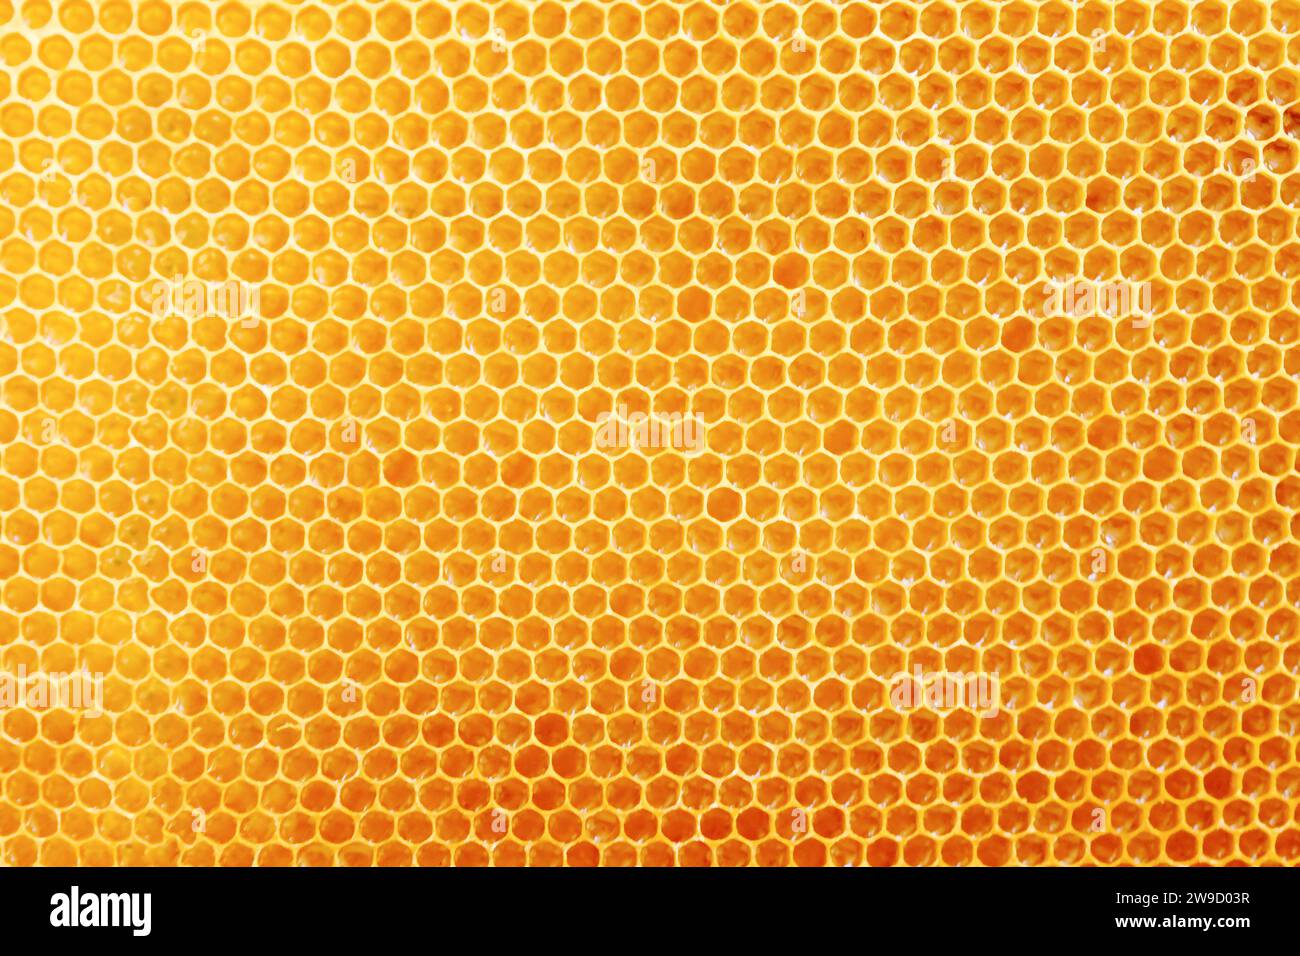 Pettini a nido d'ape con miele dolce dorato su tutto lo sfondo, consistenza ravvicinata e motivo della sezione di cera a nido d'ape Foto Stock